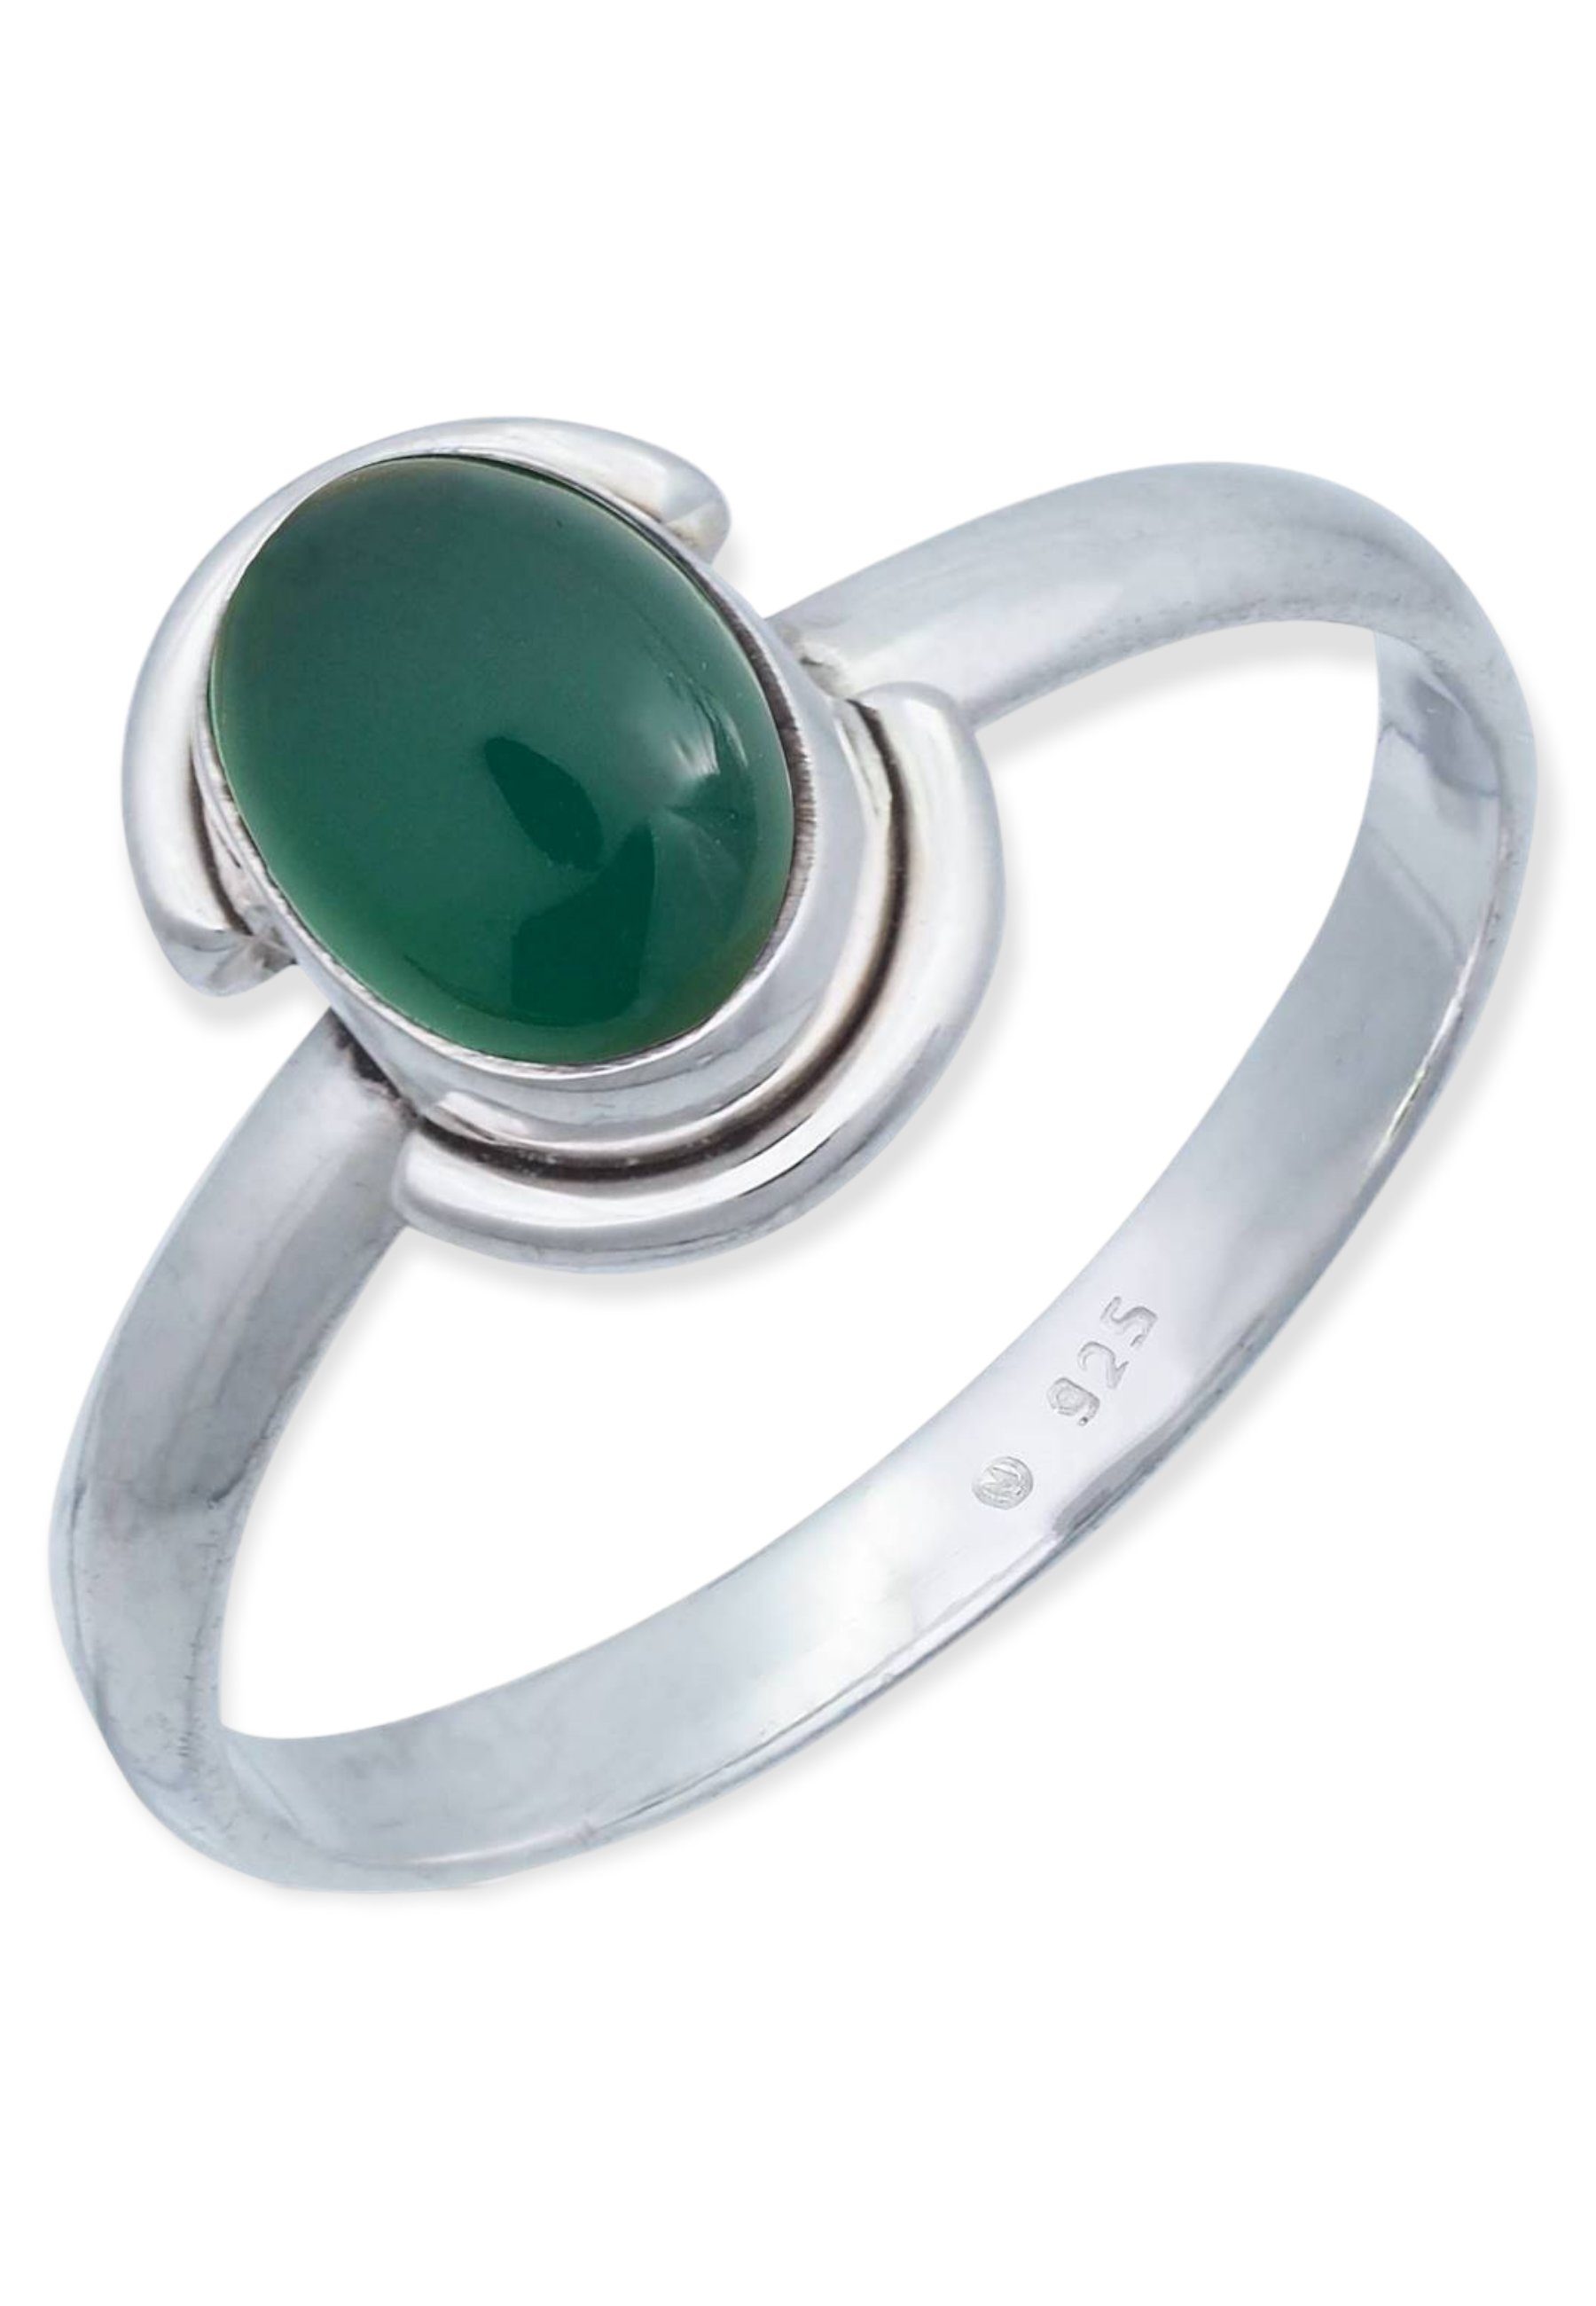 Onyx grüner 925er Silber Silberring mit mantraroma